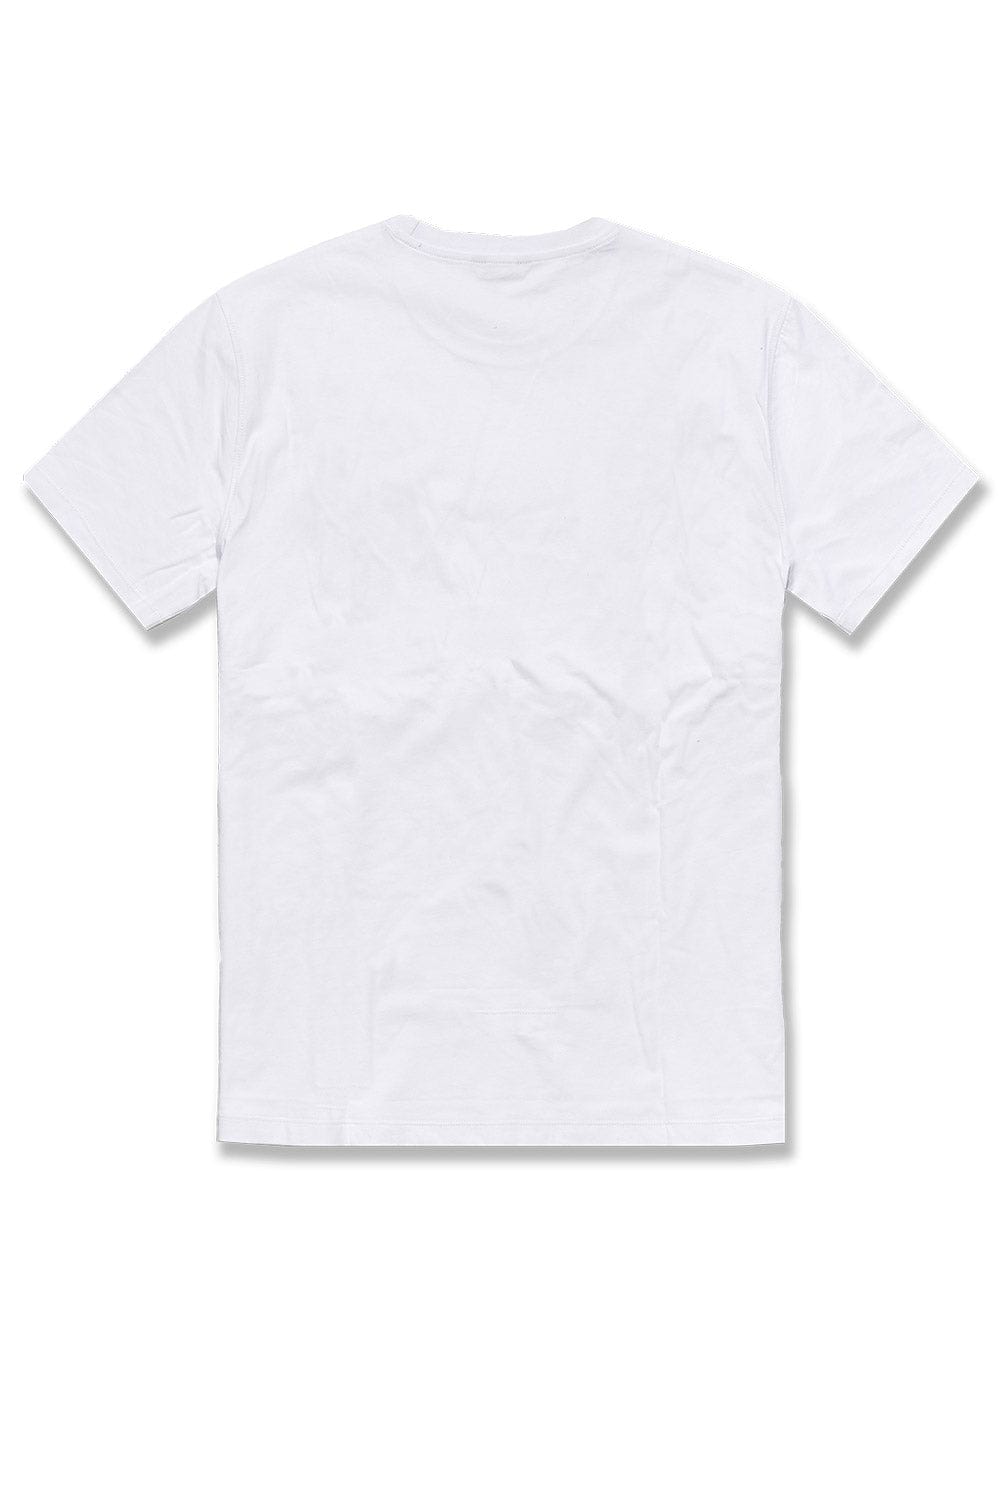 Jordan Craig Tragic T-Shirt (White)